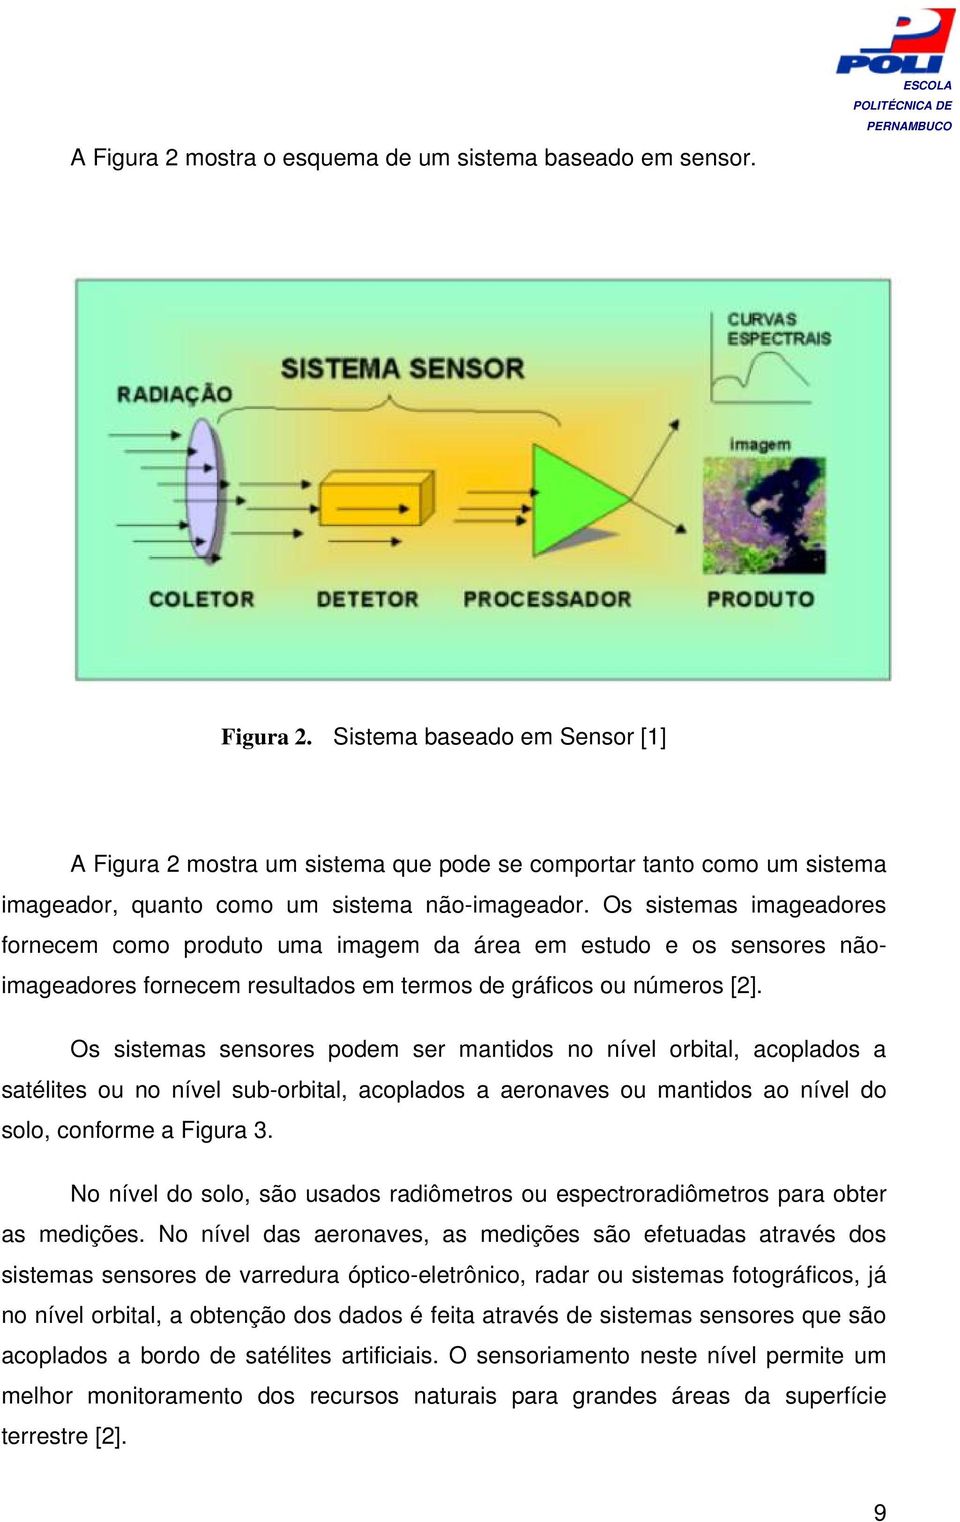 Os sistemas sensores podem ser mantidos no nível orbital, acoplados a satélites ou no nível sub-orbital, acoplados a aeronaves ou mantidos ao nível do solo, conforme a Figura 3.